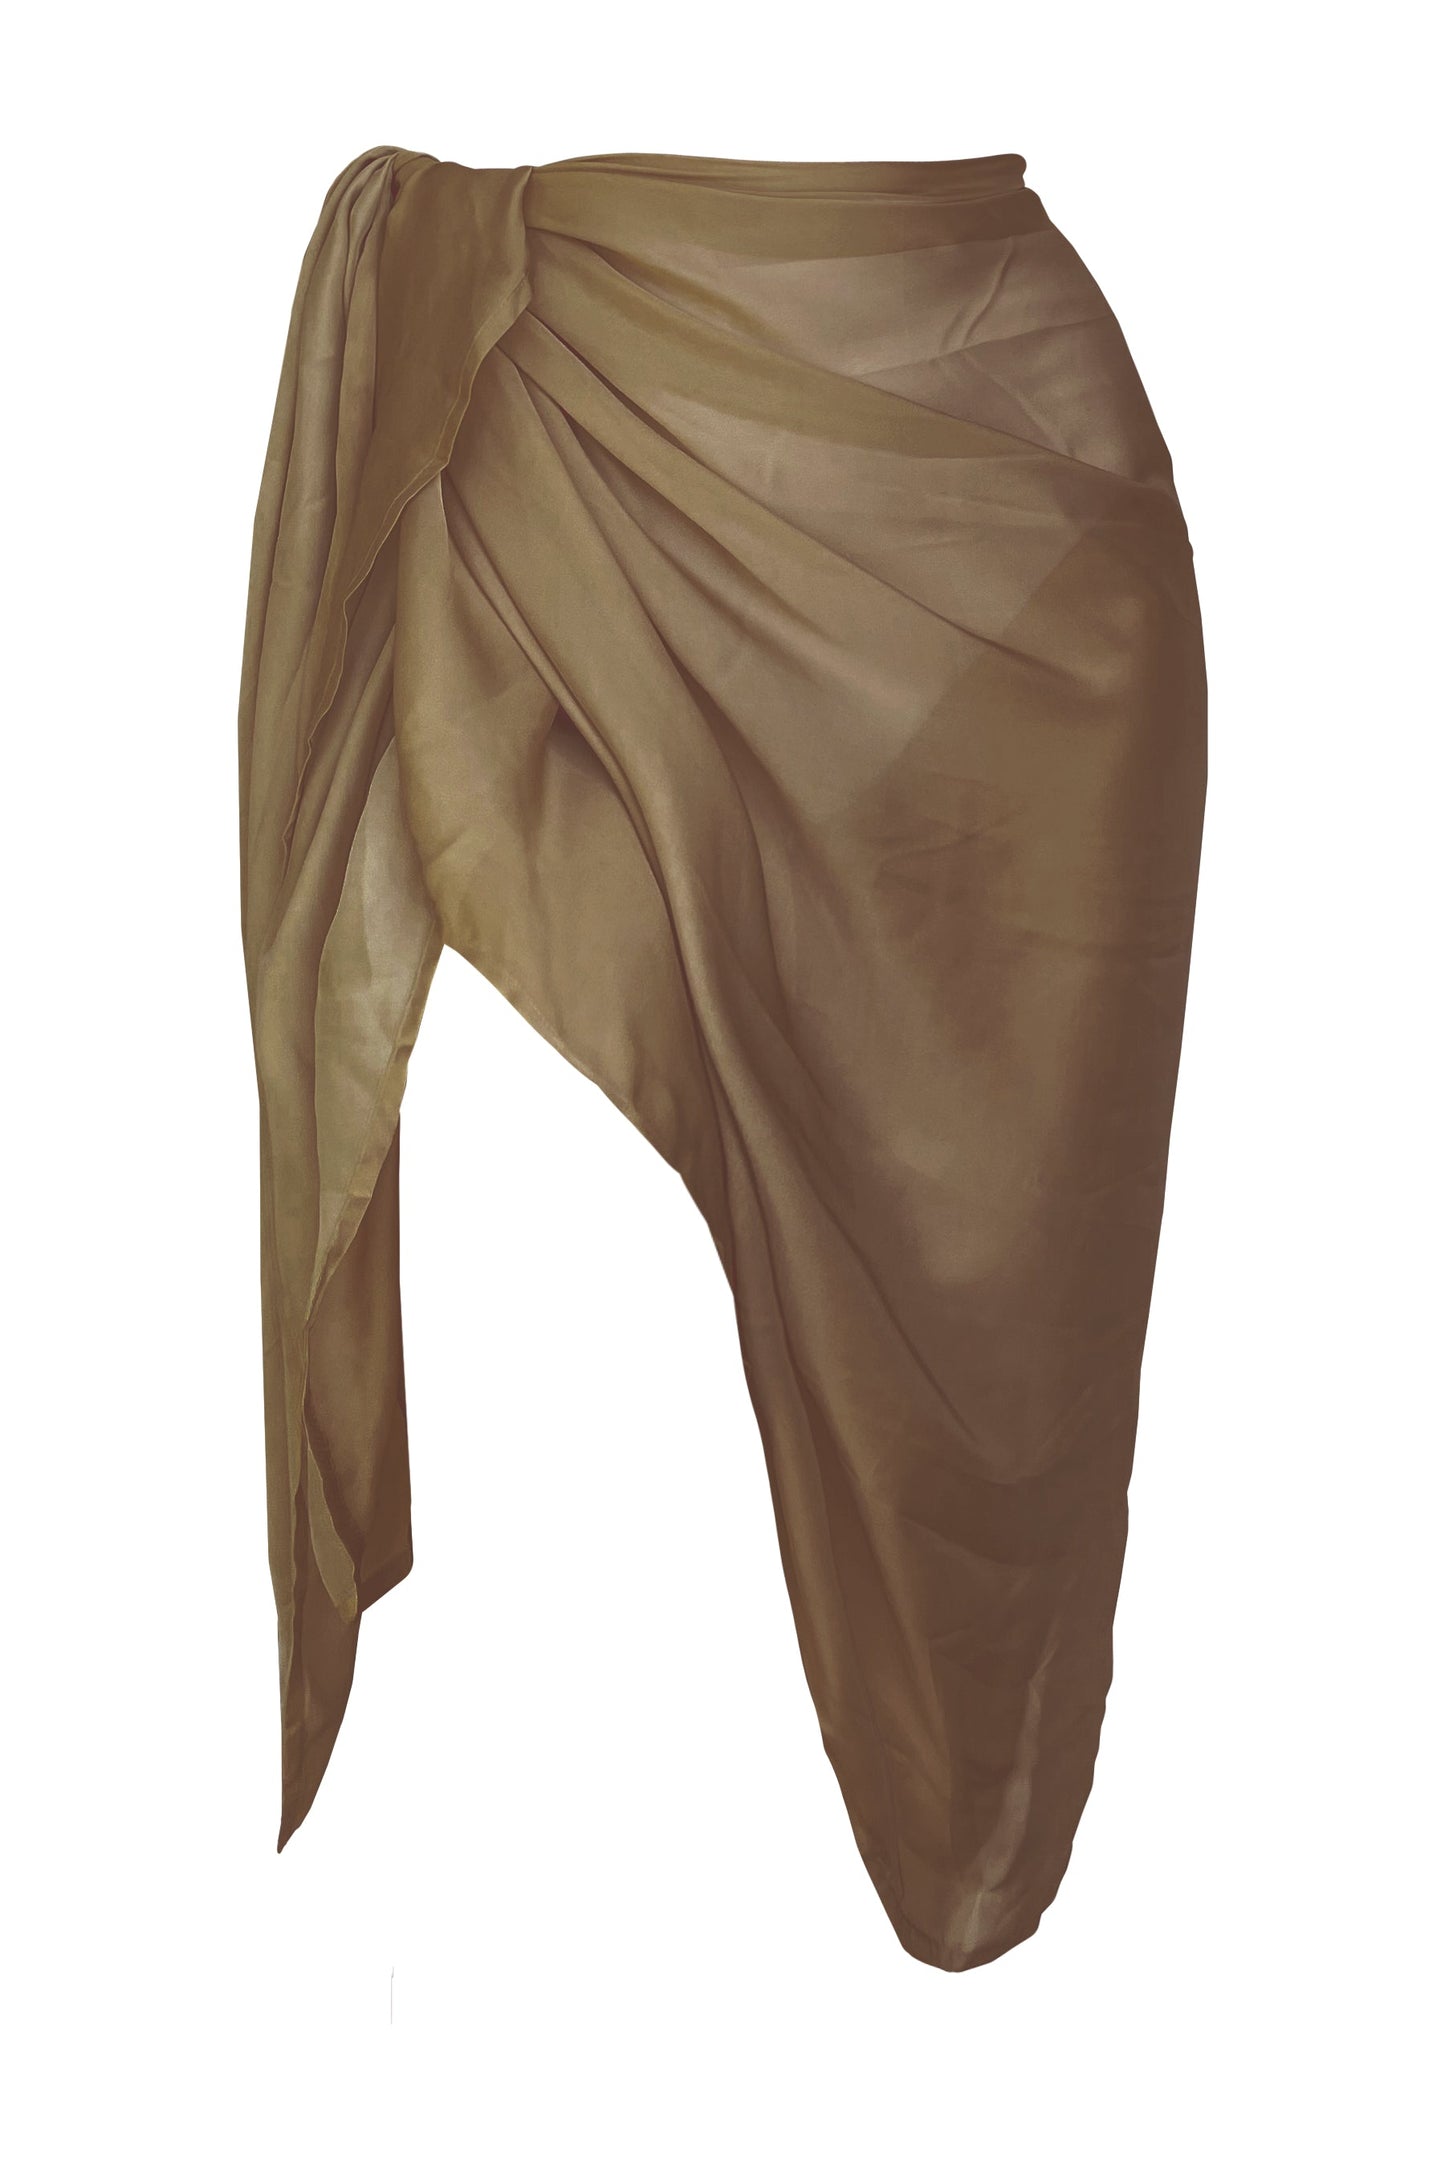 Product image of the Barcelona khaki sarong